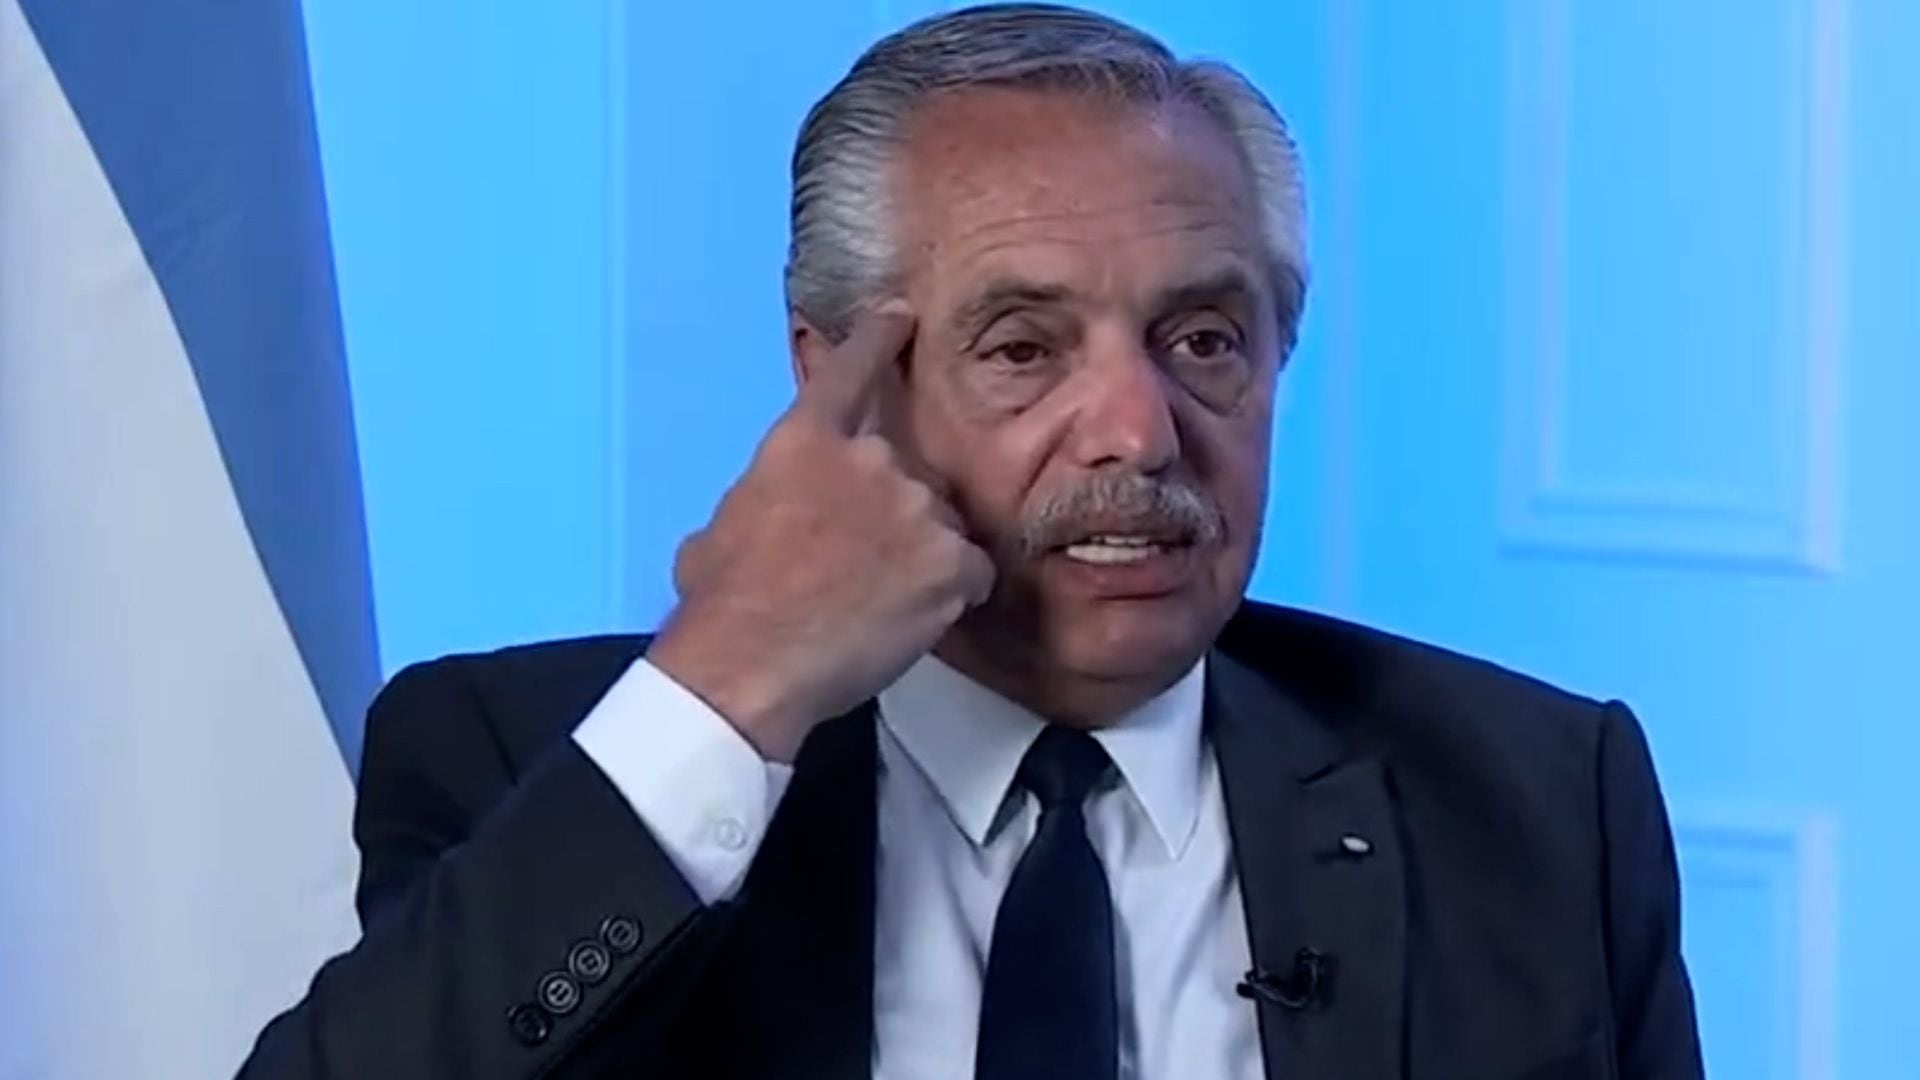 Alberto Fernández en le TV de Brasil dice que la inflación en Argentina es autoconstruida